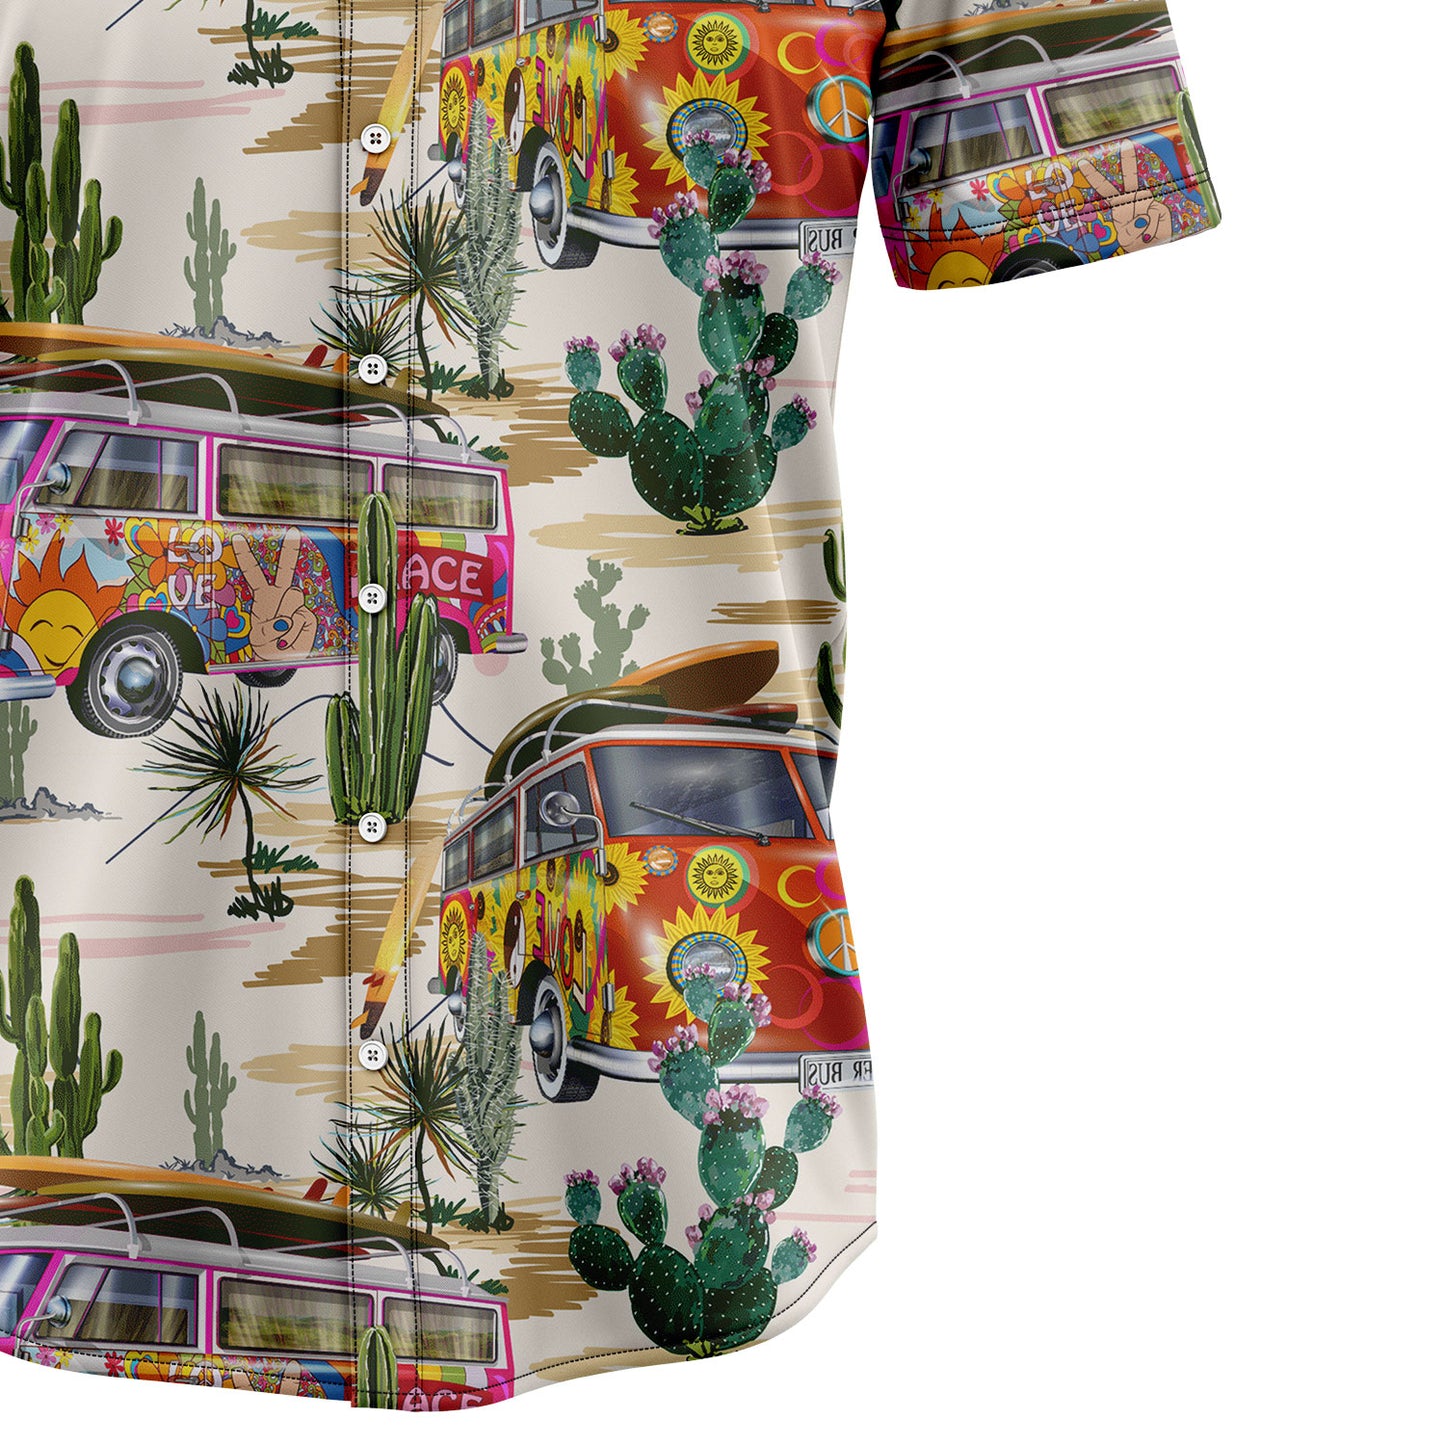 Cactus Hippie H207038 Hawaiian Shirt